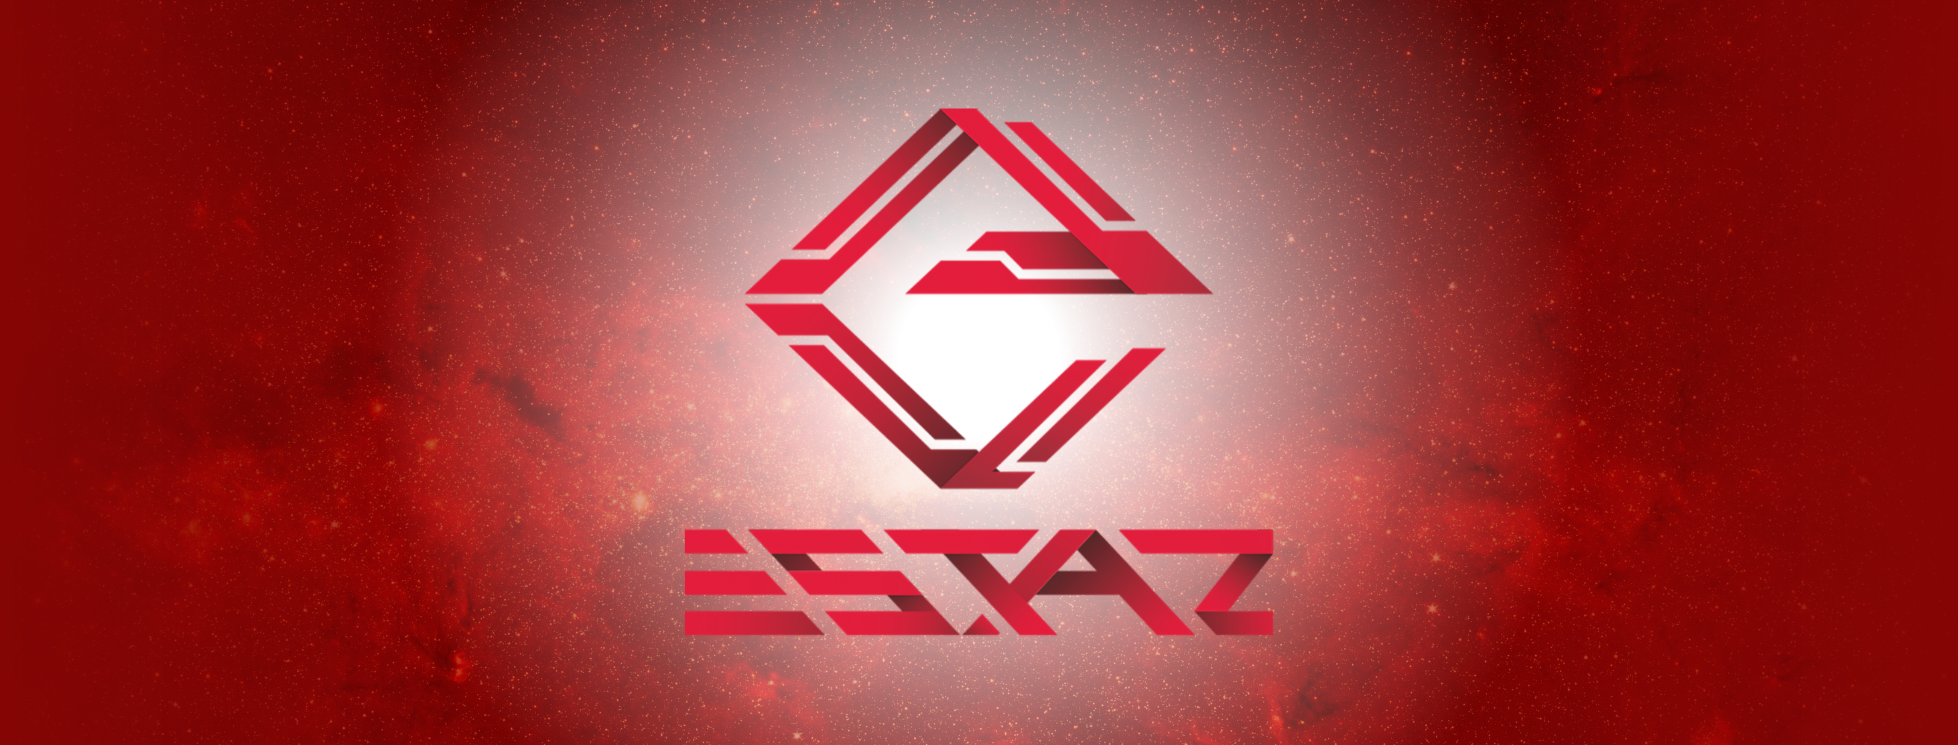 ESTAZ taking MENA esports to the next level!